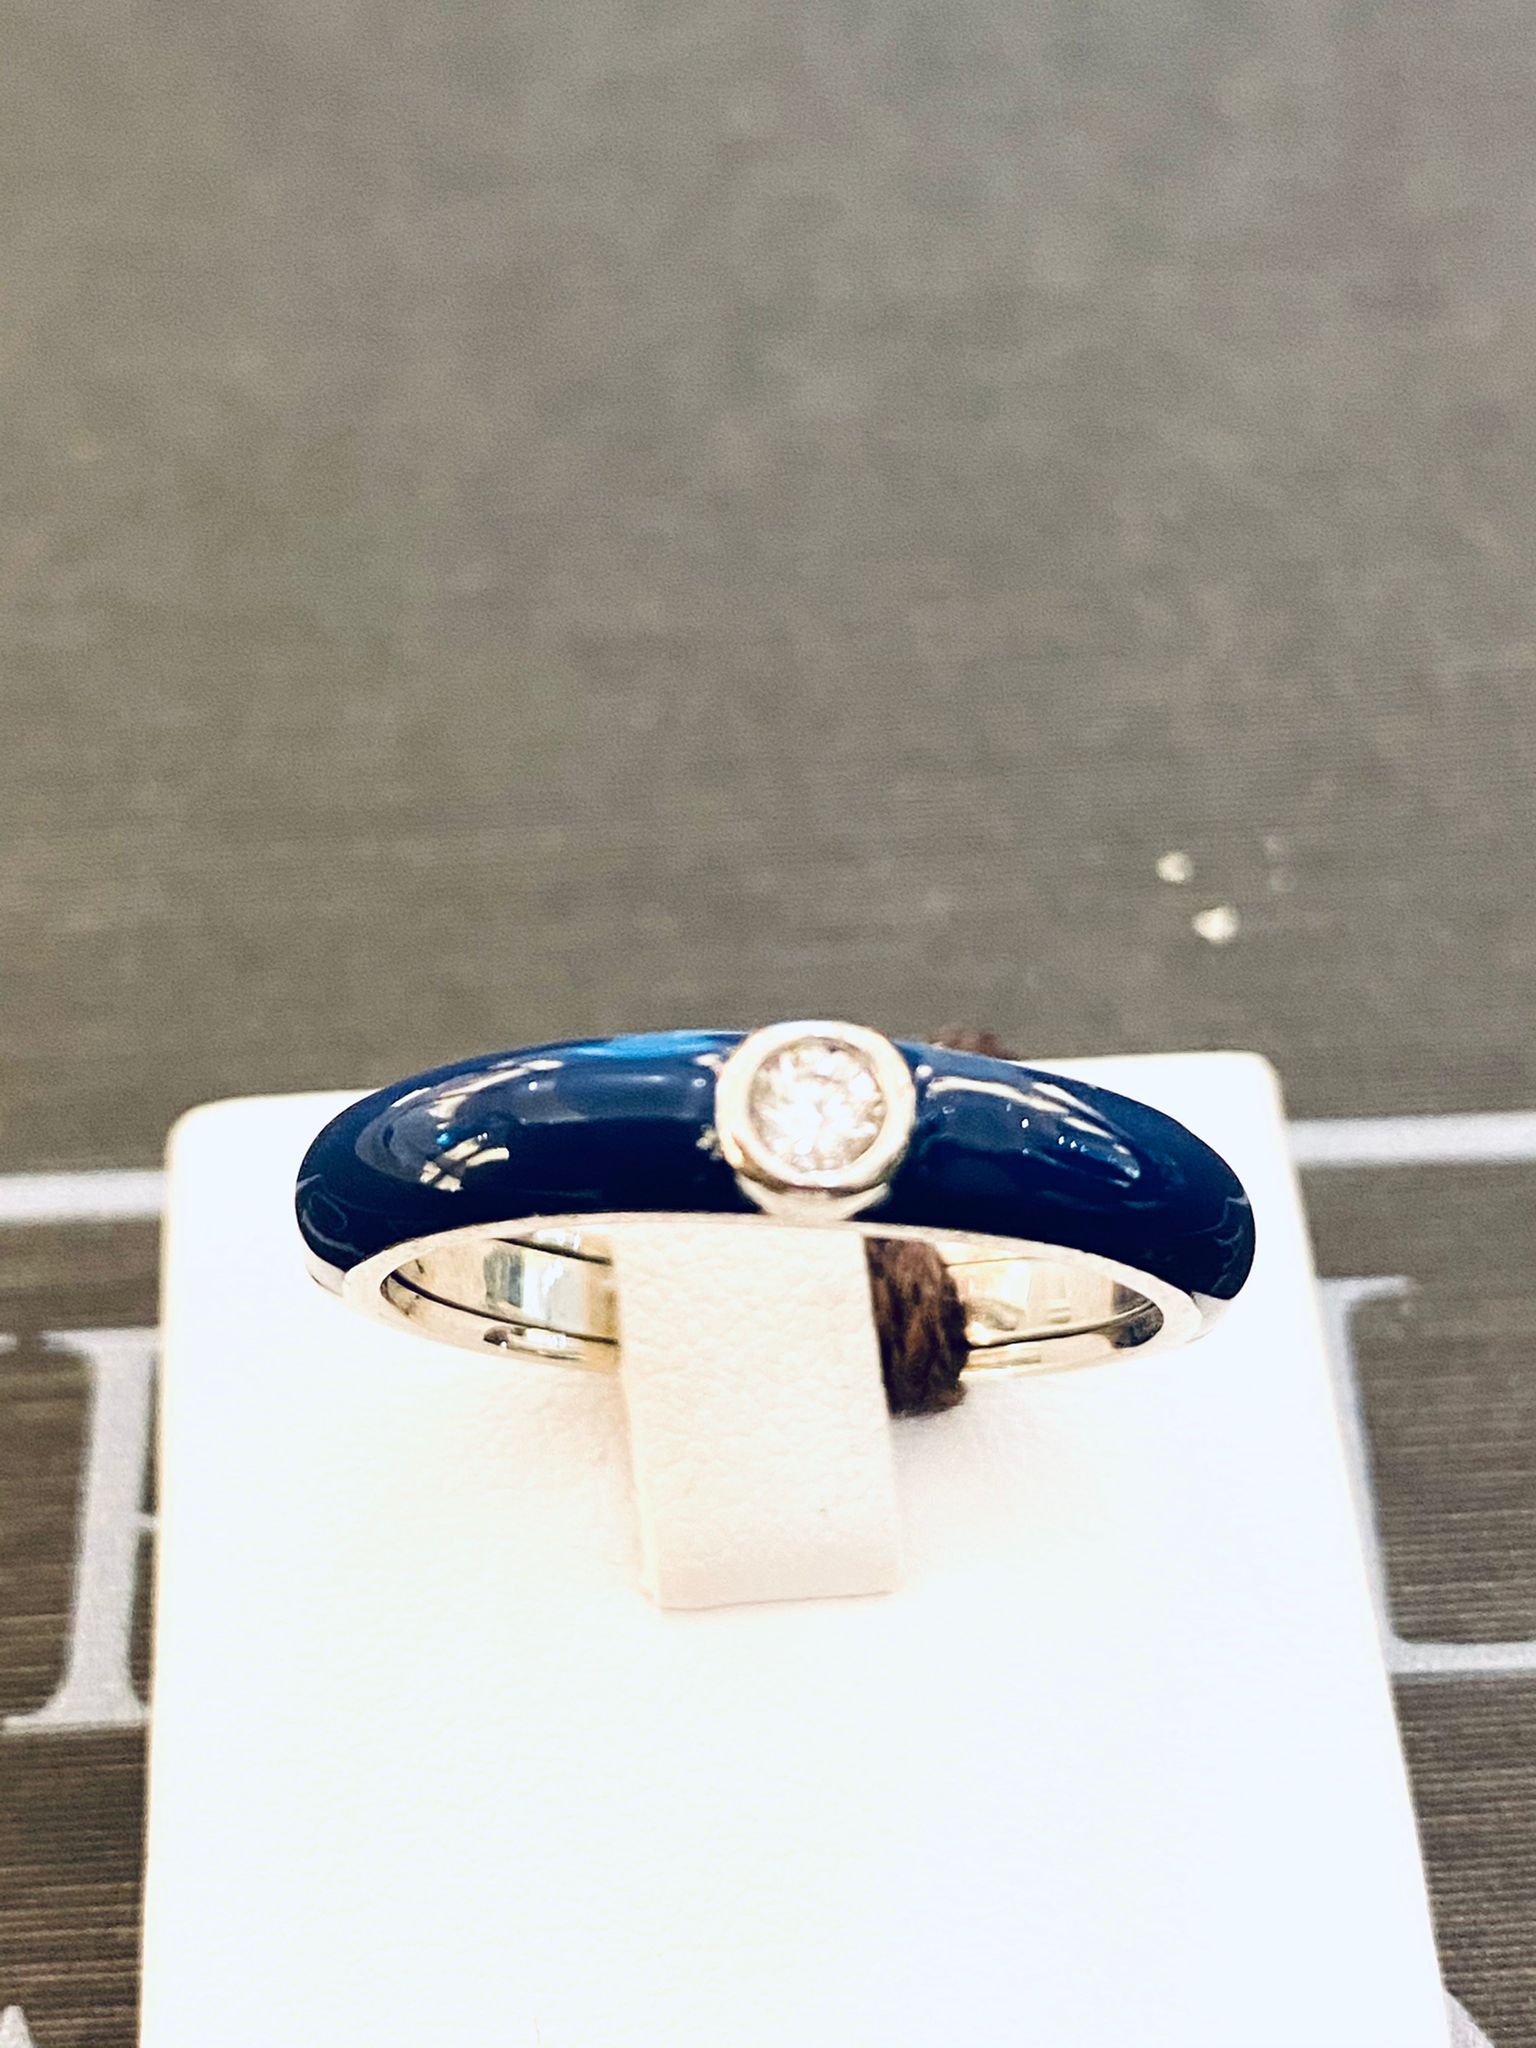 LABRIORO anello mini fascia argento 925% silver gold smalto blu indaco cristallo bianco